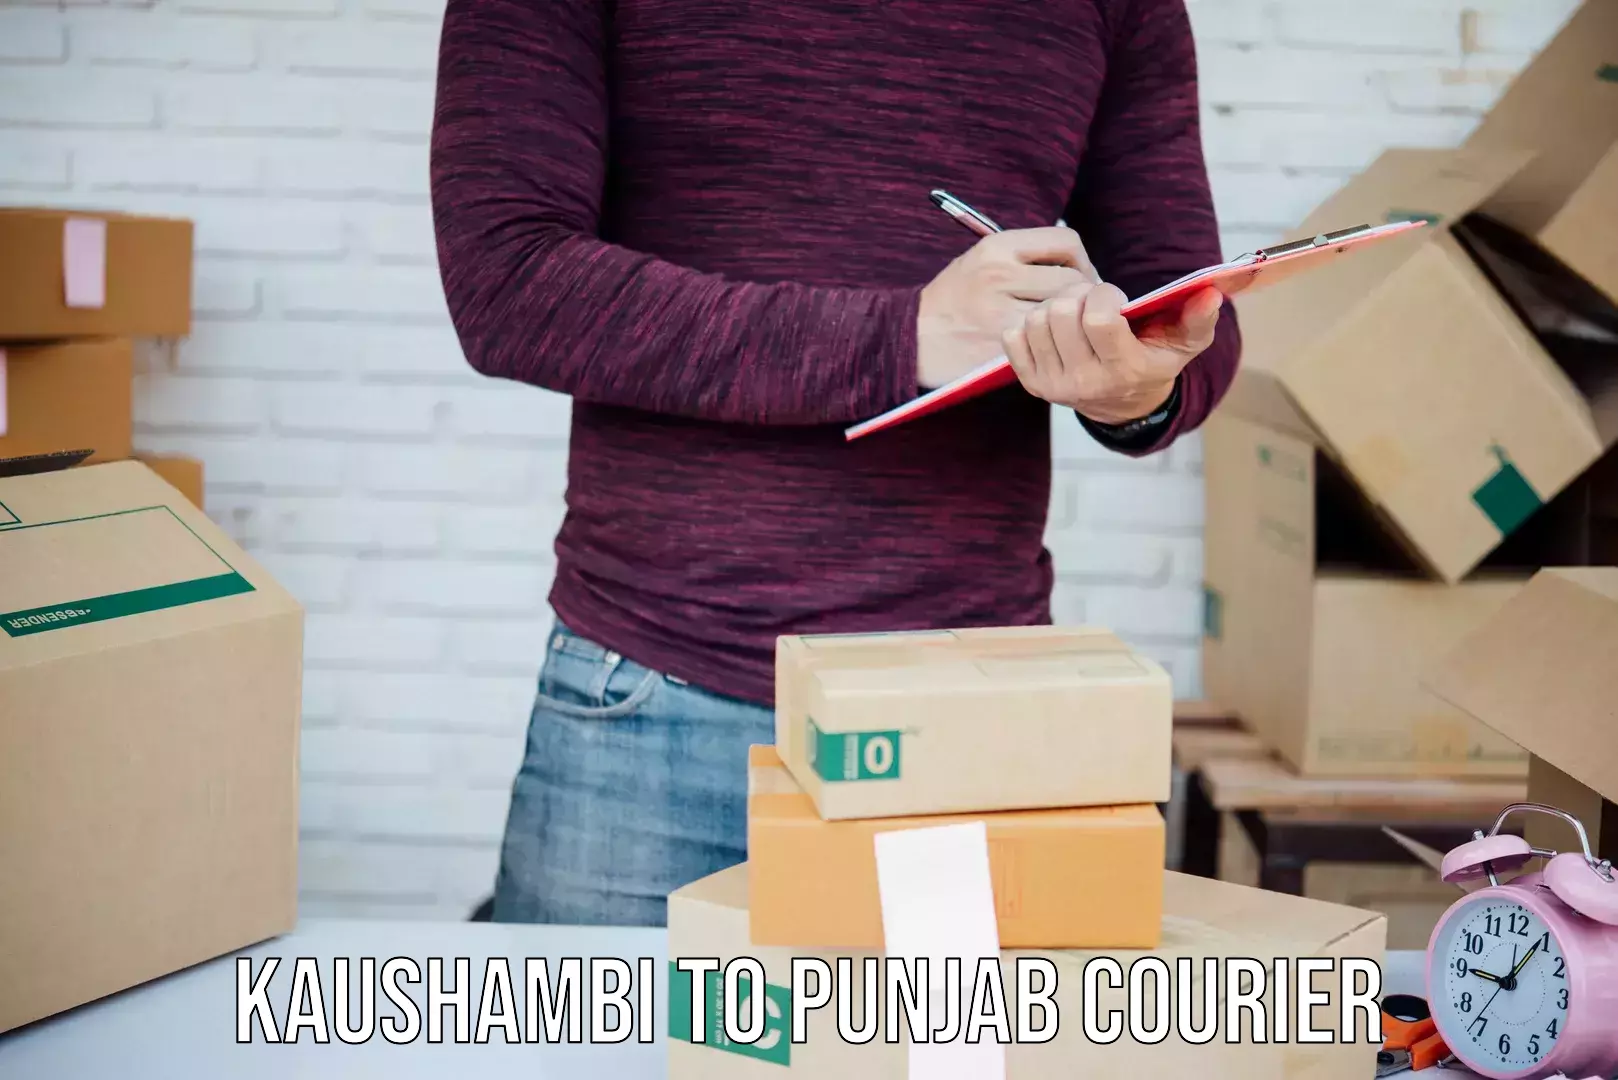 Automated shipping processes Kaushambi to Punjab